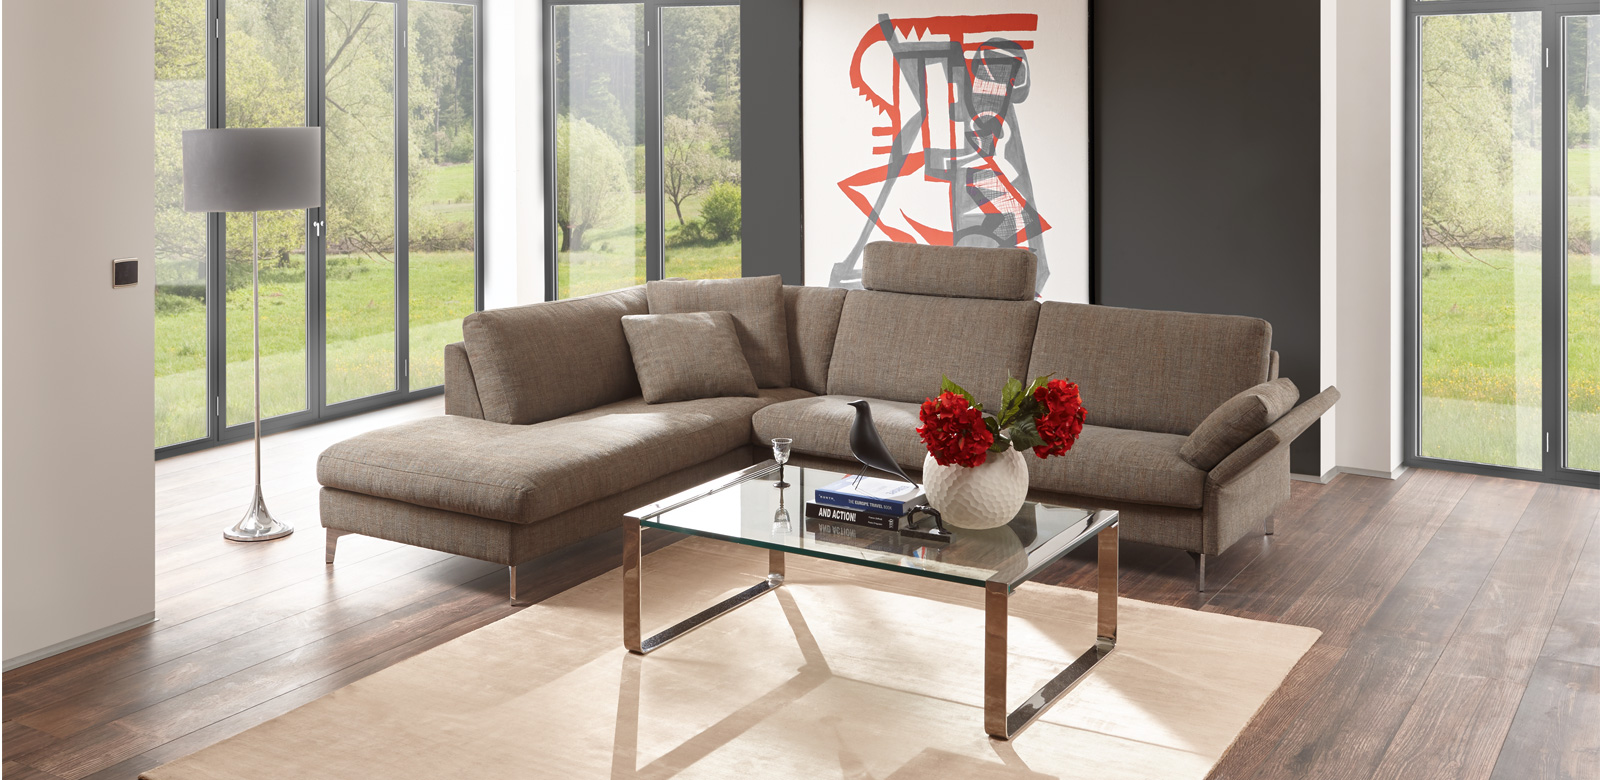 CL990 longchair combinatie in grijs-bruine stof in een minimalistische woonkamer en uitzicht op grote tuin